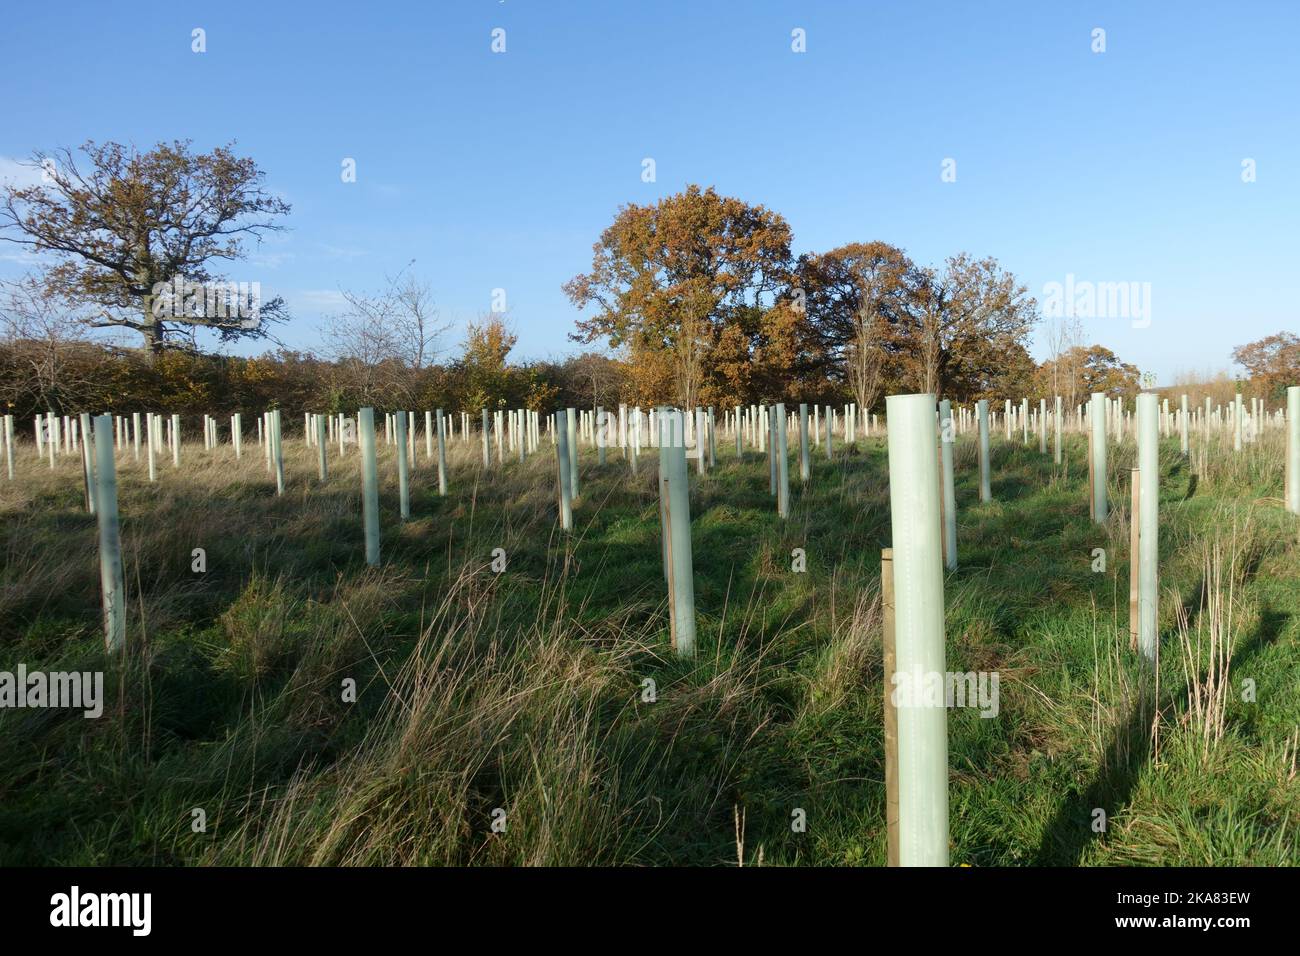 Una nuova piantagione di alberi decidui con pali e guardie di plastica per creare boschi intorno a un unico grande albero di quercia stading, berkshire, novembre Foto Stock